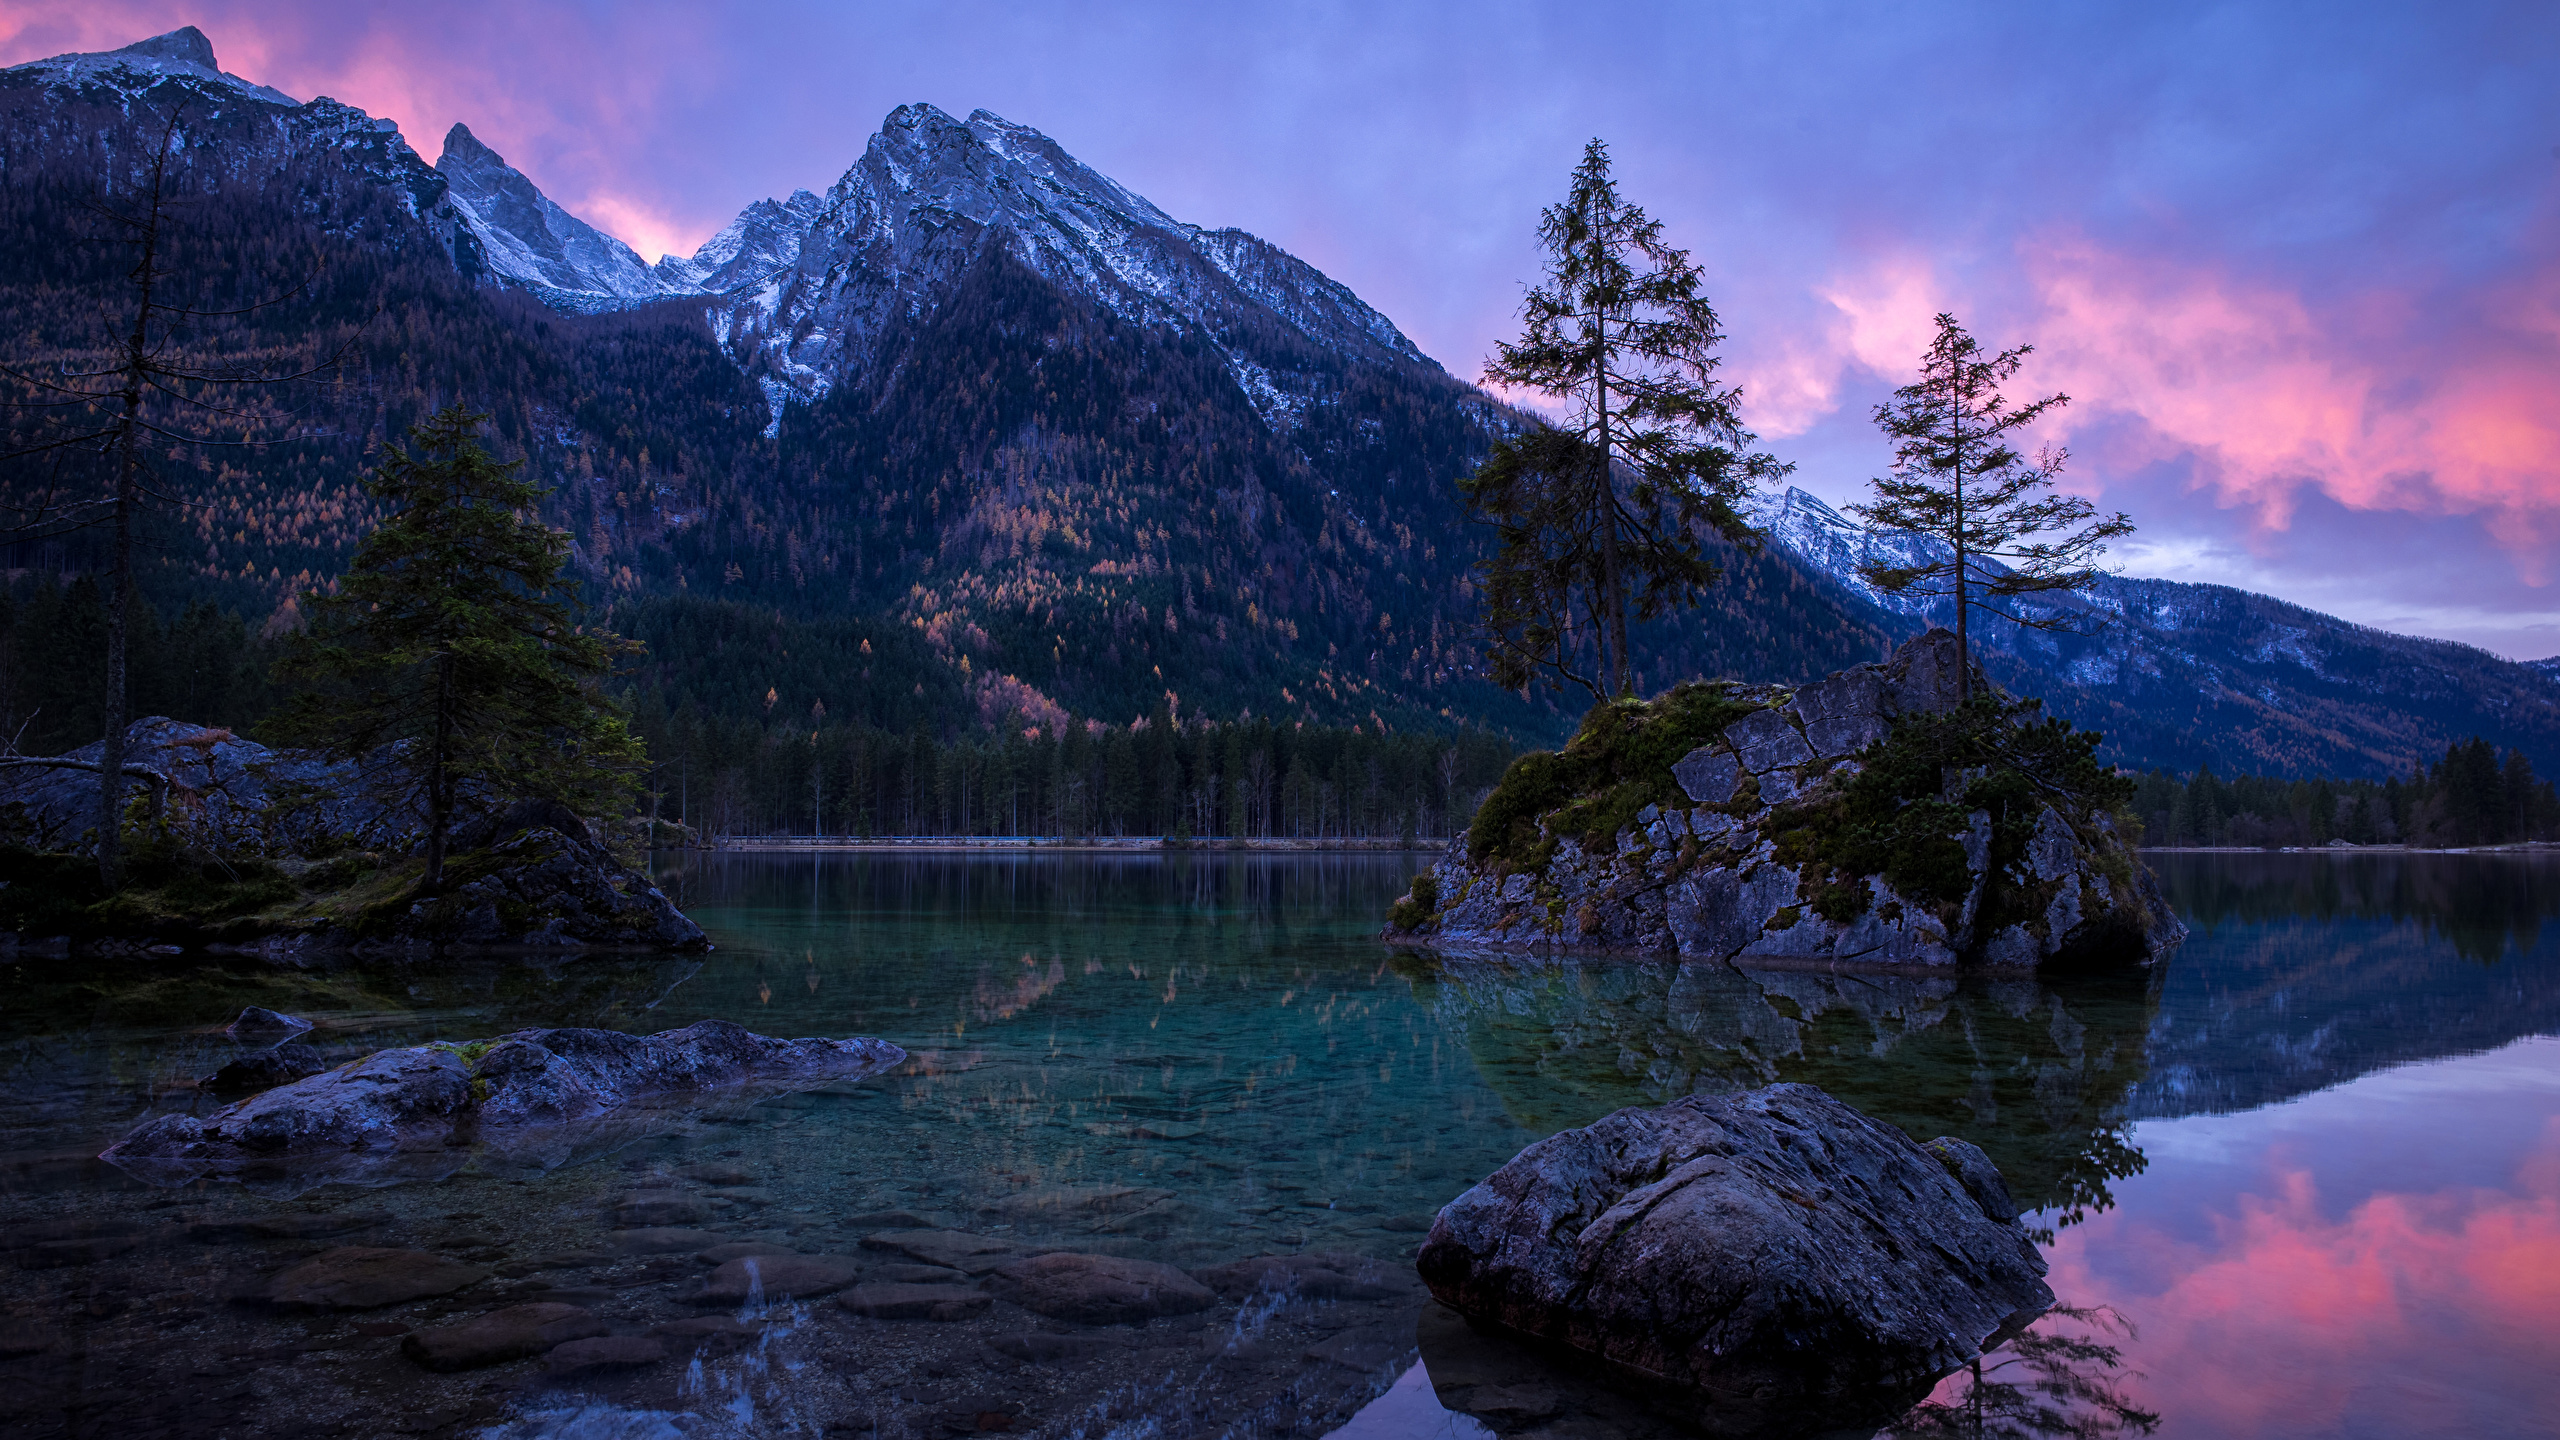 Bilder von Bayern Deutschland Berg Natur Landschaftsfotografie Abend Stein Flusse Laubmoose B盲ume 2560x1440 Gebirge Fluss Steine